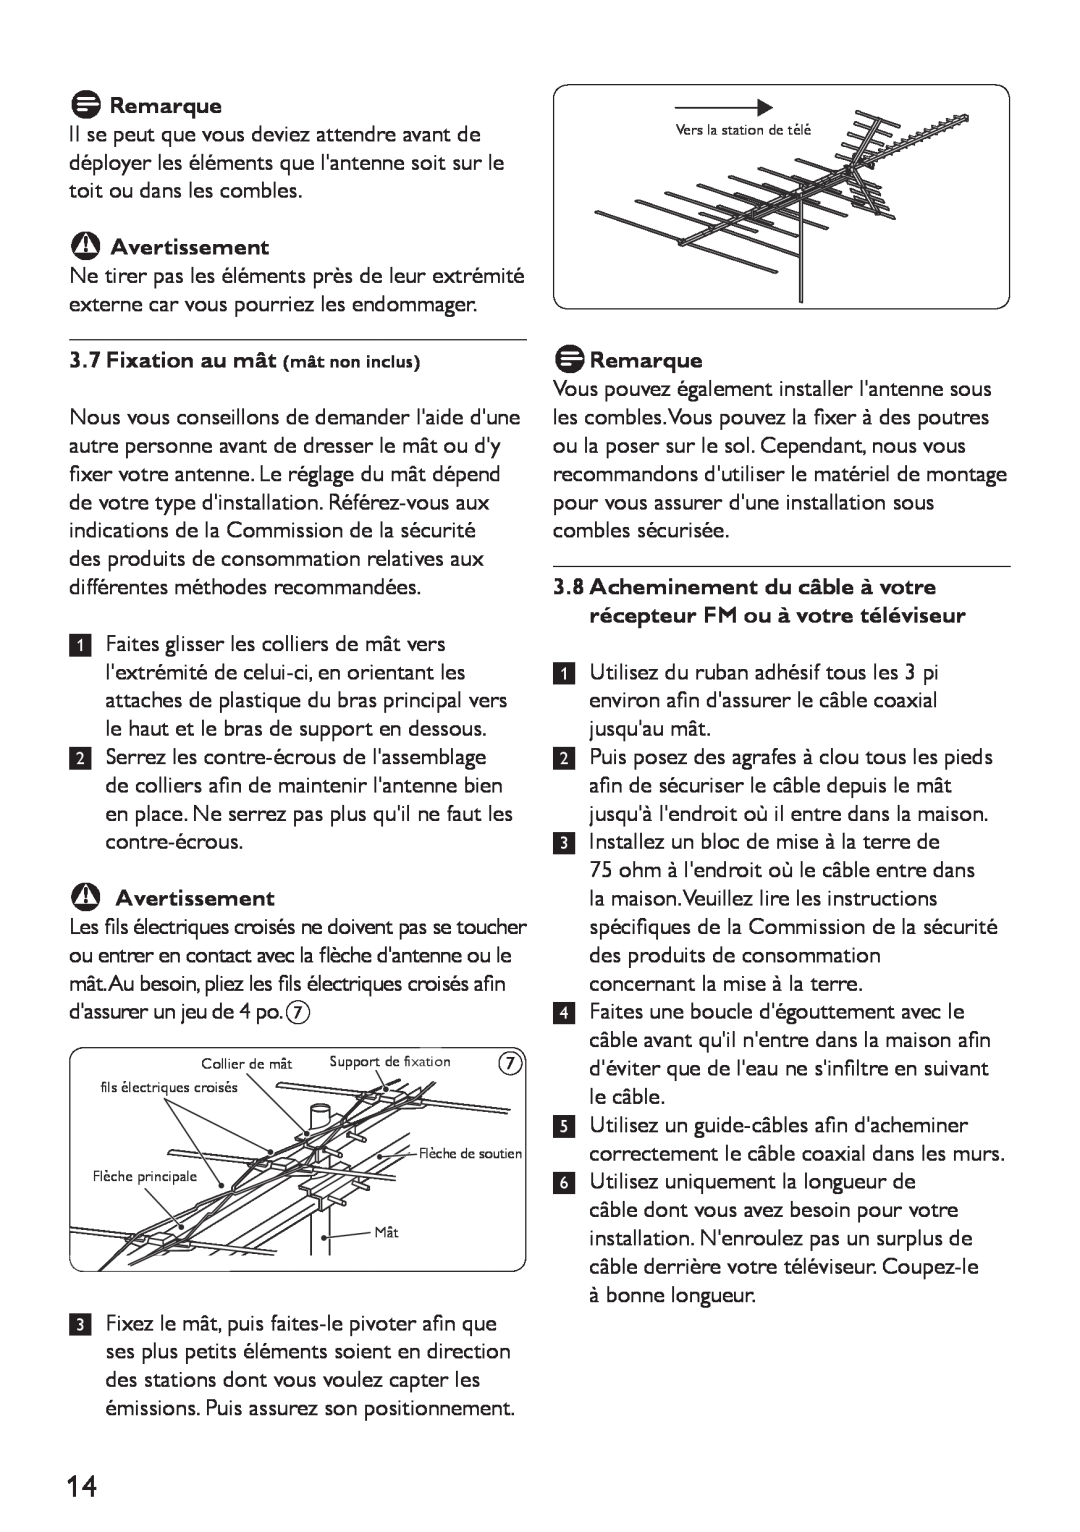 Philips SDV4401/27 manual 3.7Fixation au mât mât non inclus, DRemarque, BAvertissement 